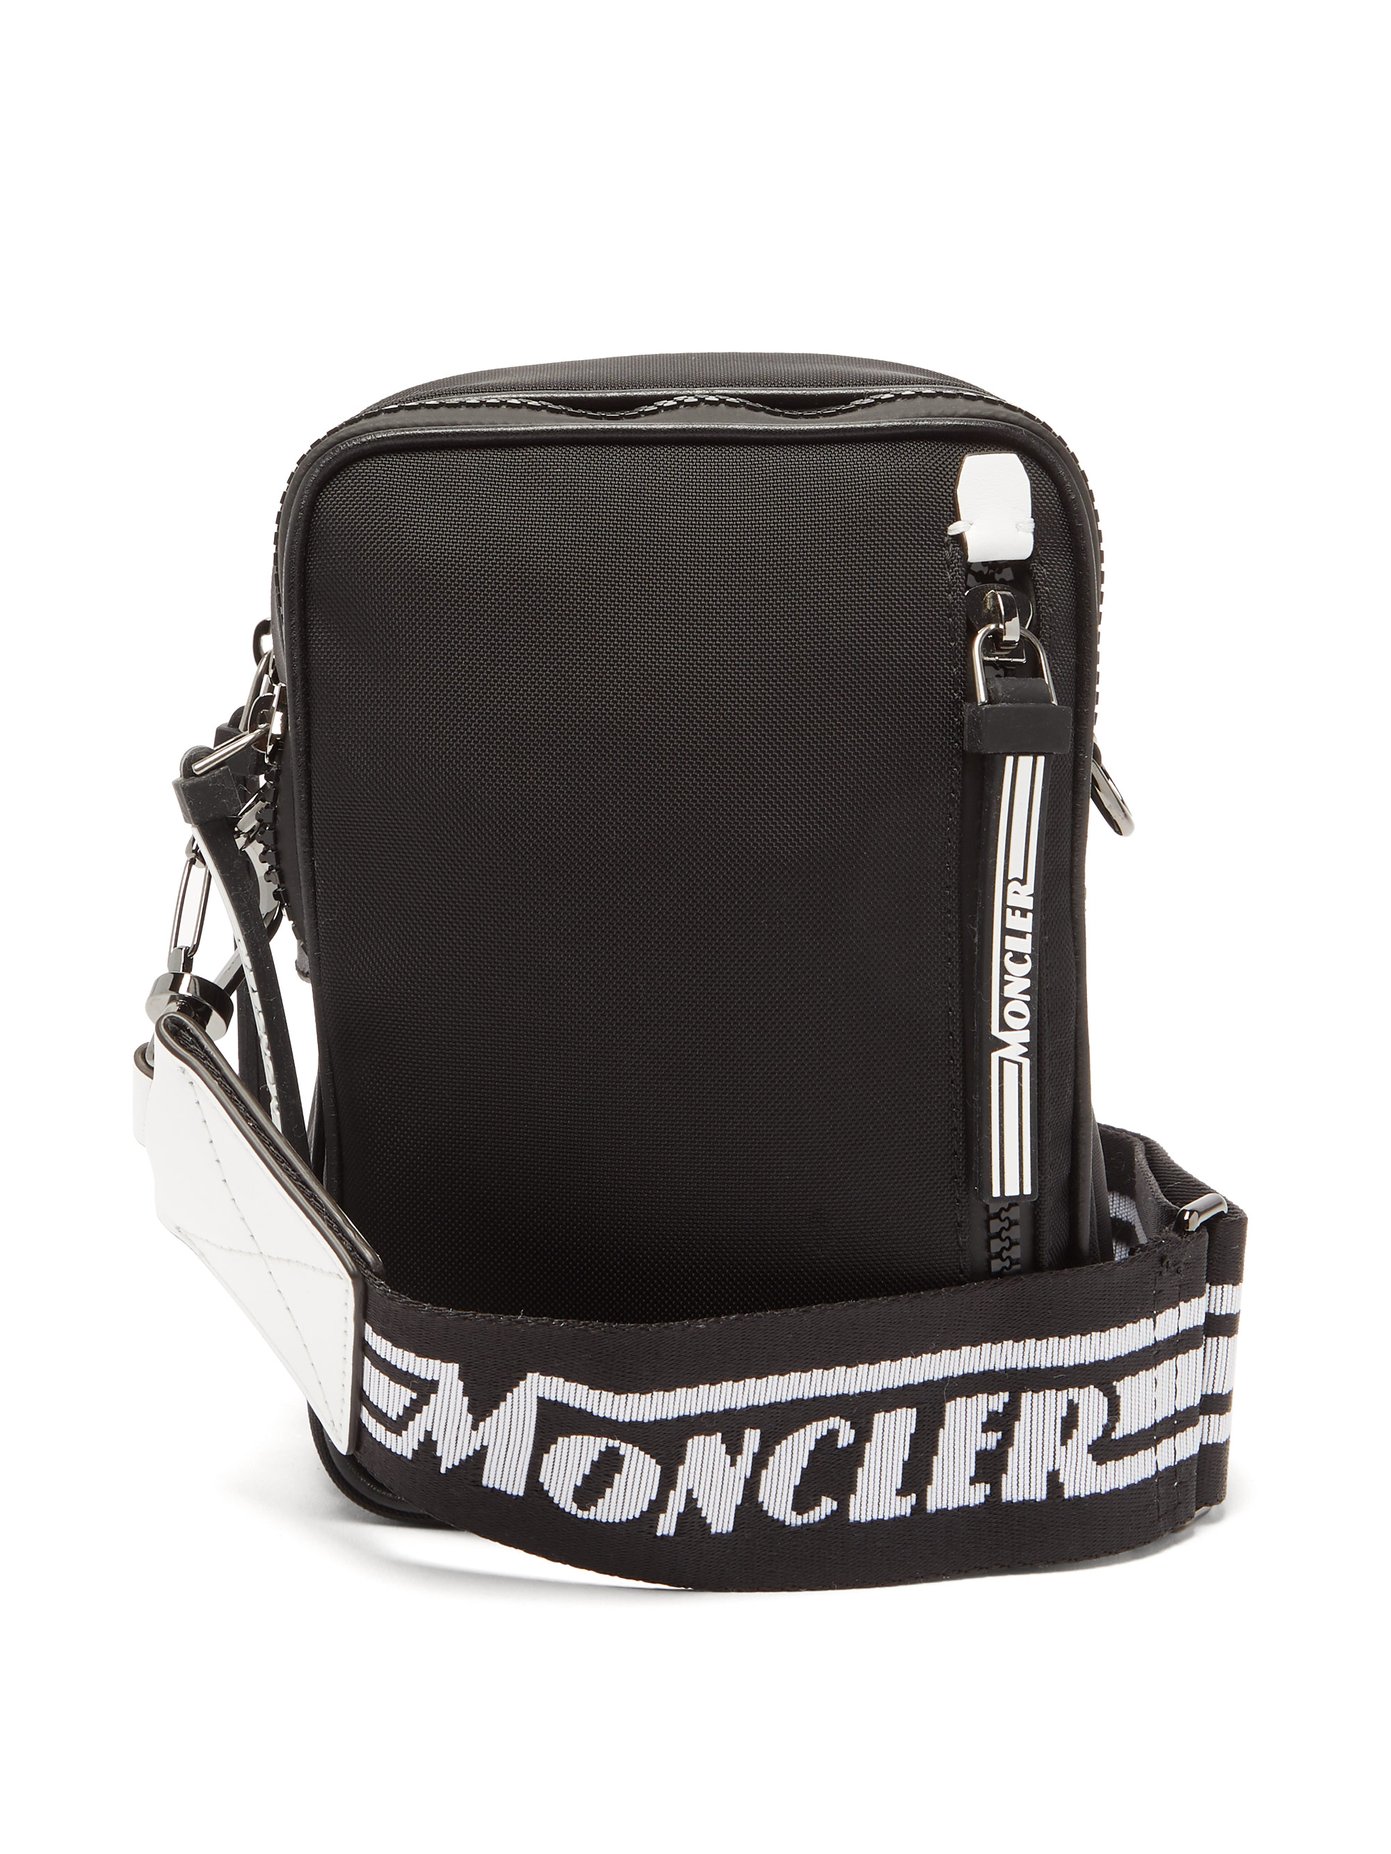 moncler belt bag